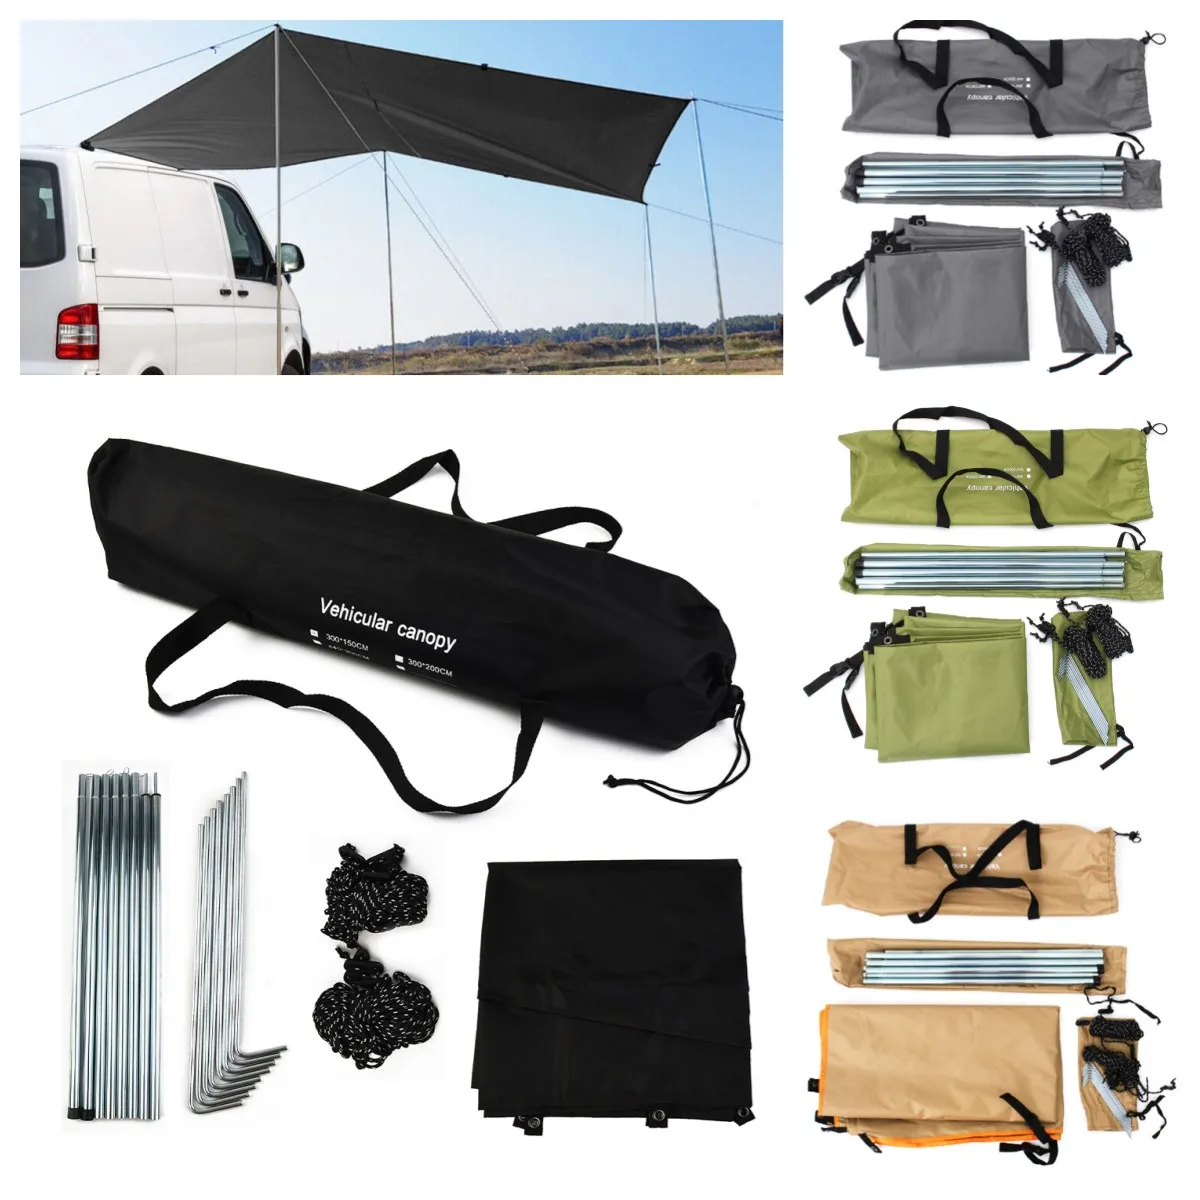 

Боковая палатка для автомобиля, цвет серый/черный/хаки/армейский наружный навес, палатка для пикника, навес для транспортного средства, акс...